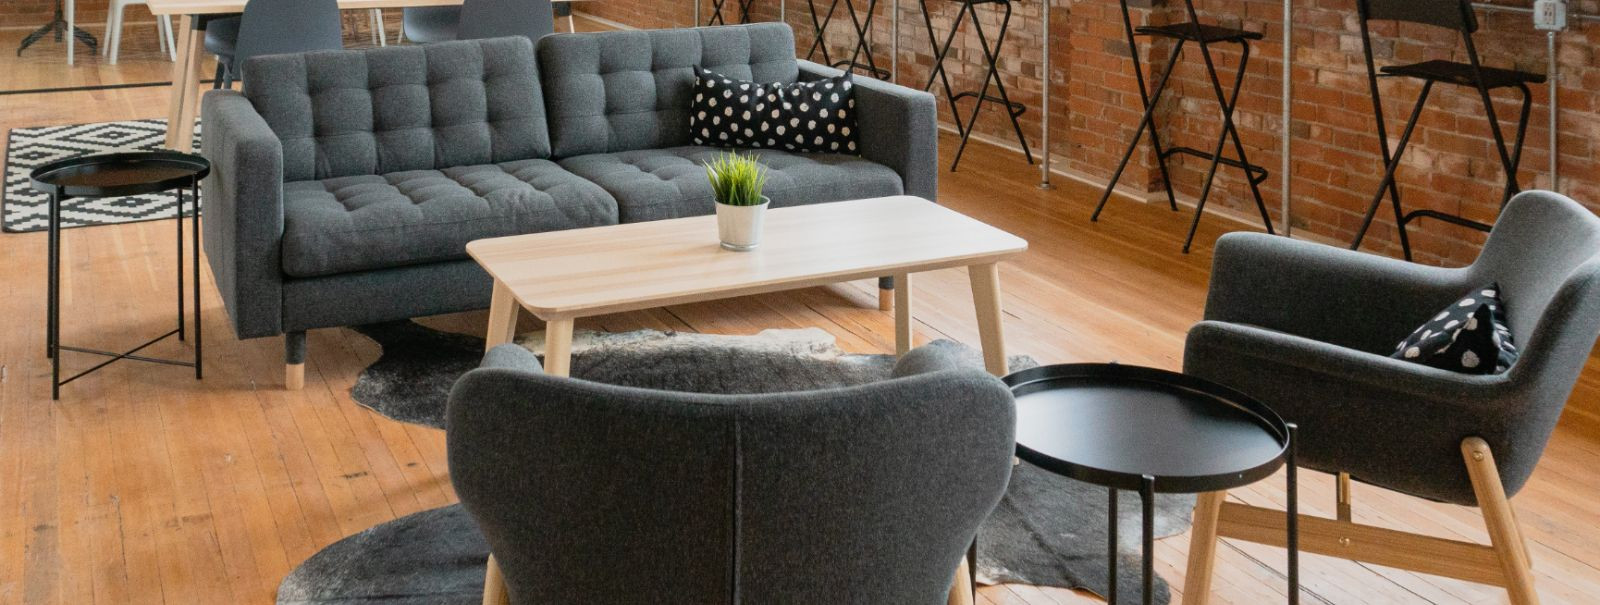 Eritellimusel valmistatud mööbel on kliendi või ruumi konkreetsetele nõuetele vastavalt kujundatud mööbel. Erinevalt masstoodangust on eritellimusel valmistatud